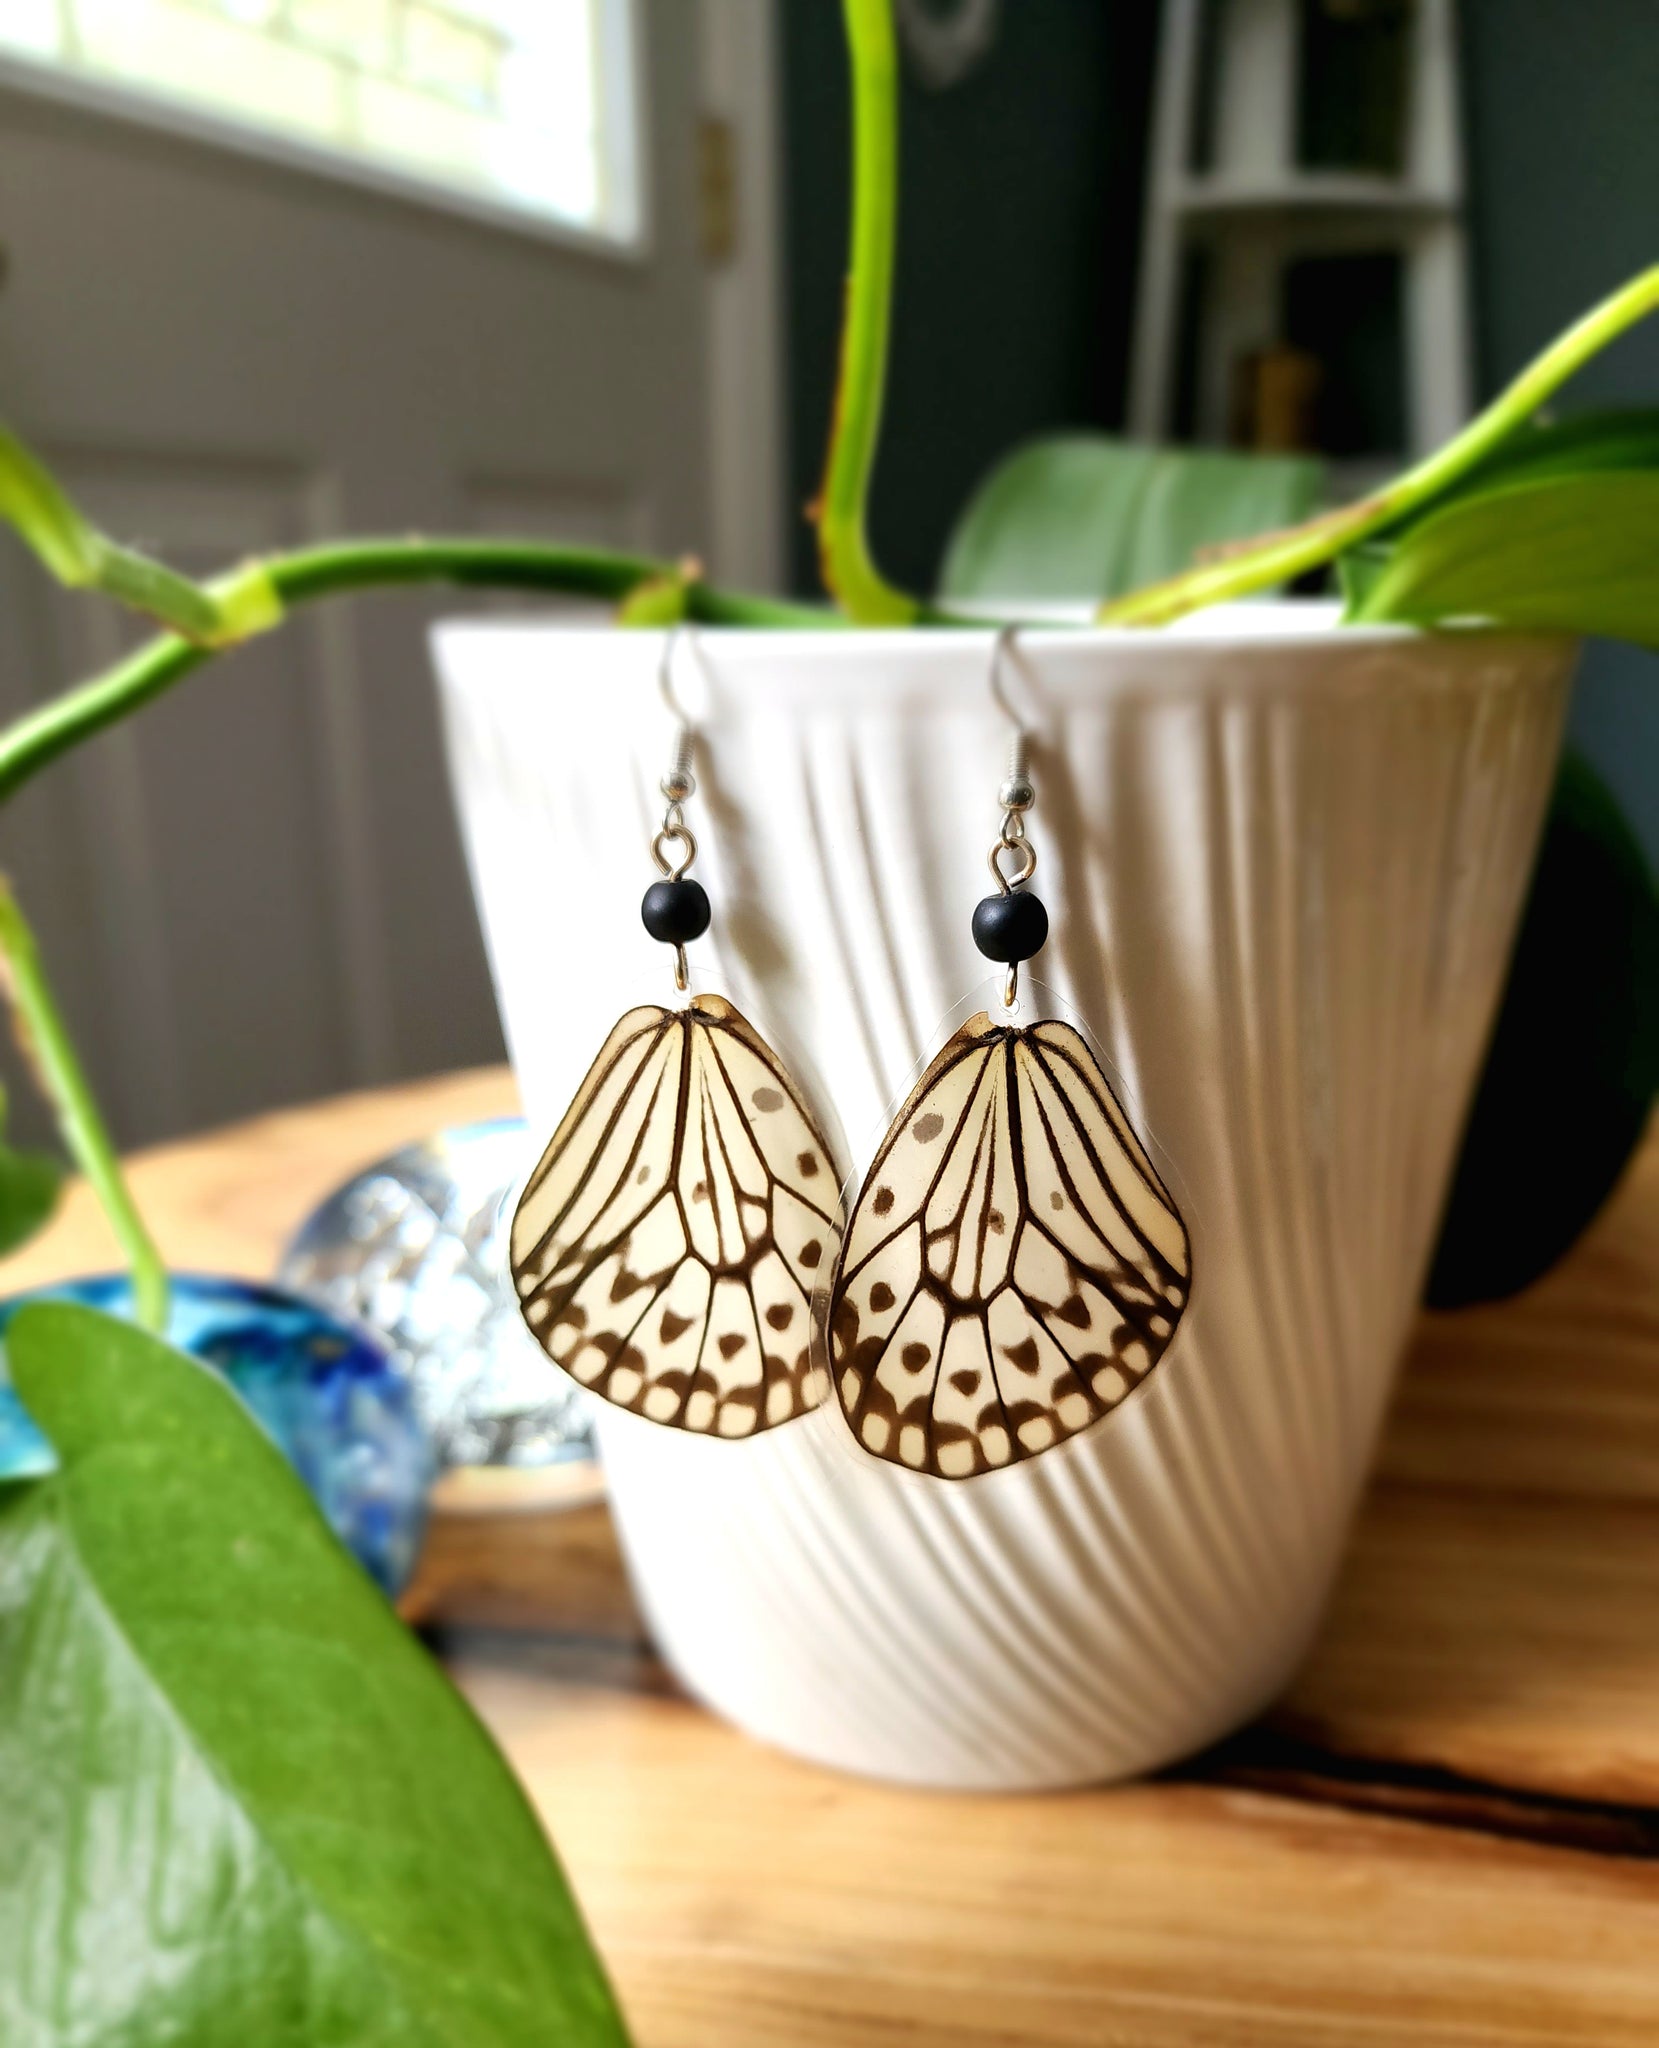 Tree Nymph Butterfly, Idea Leuconoe Butterfly Earrings